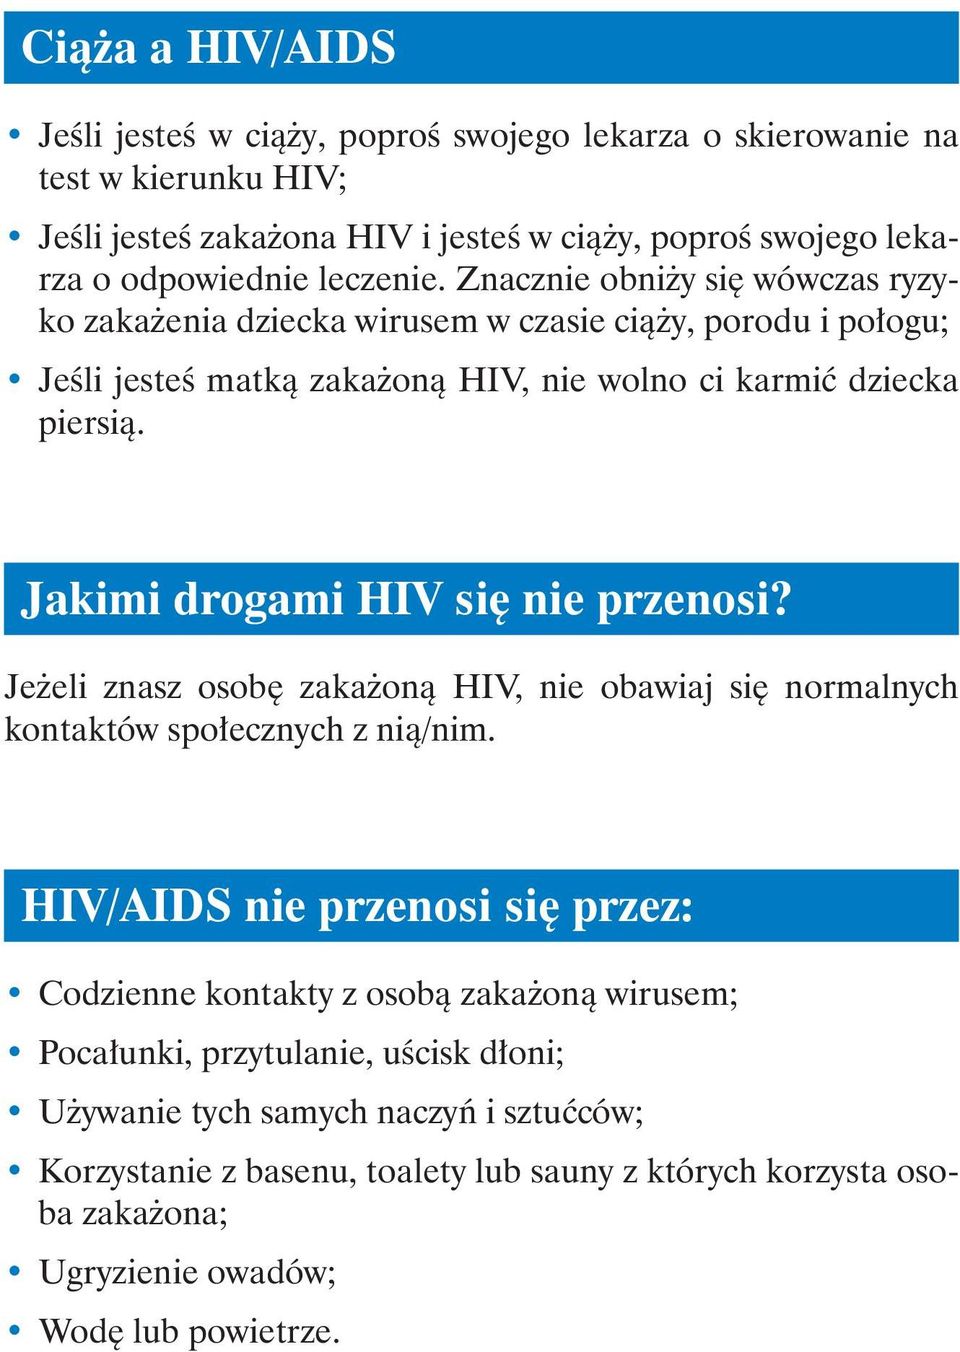 Jakimi drogami HIV się nie przenosi? Jeżeli znasz osobę zakażoną HIV, nie obawiaj się normalnych kontaktów społecznych z nią/nim.